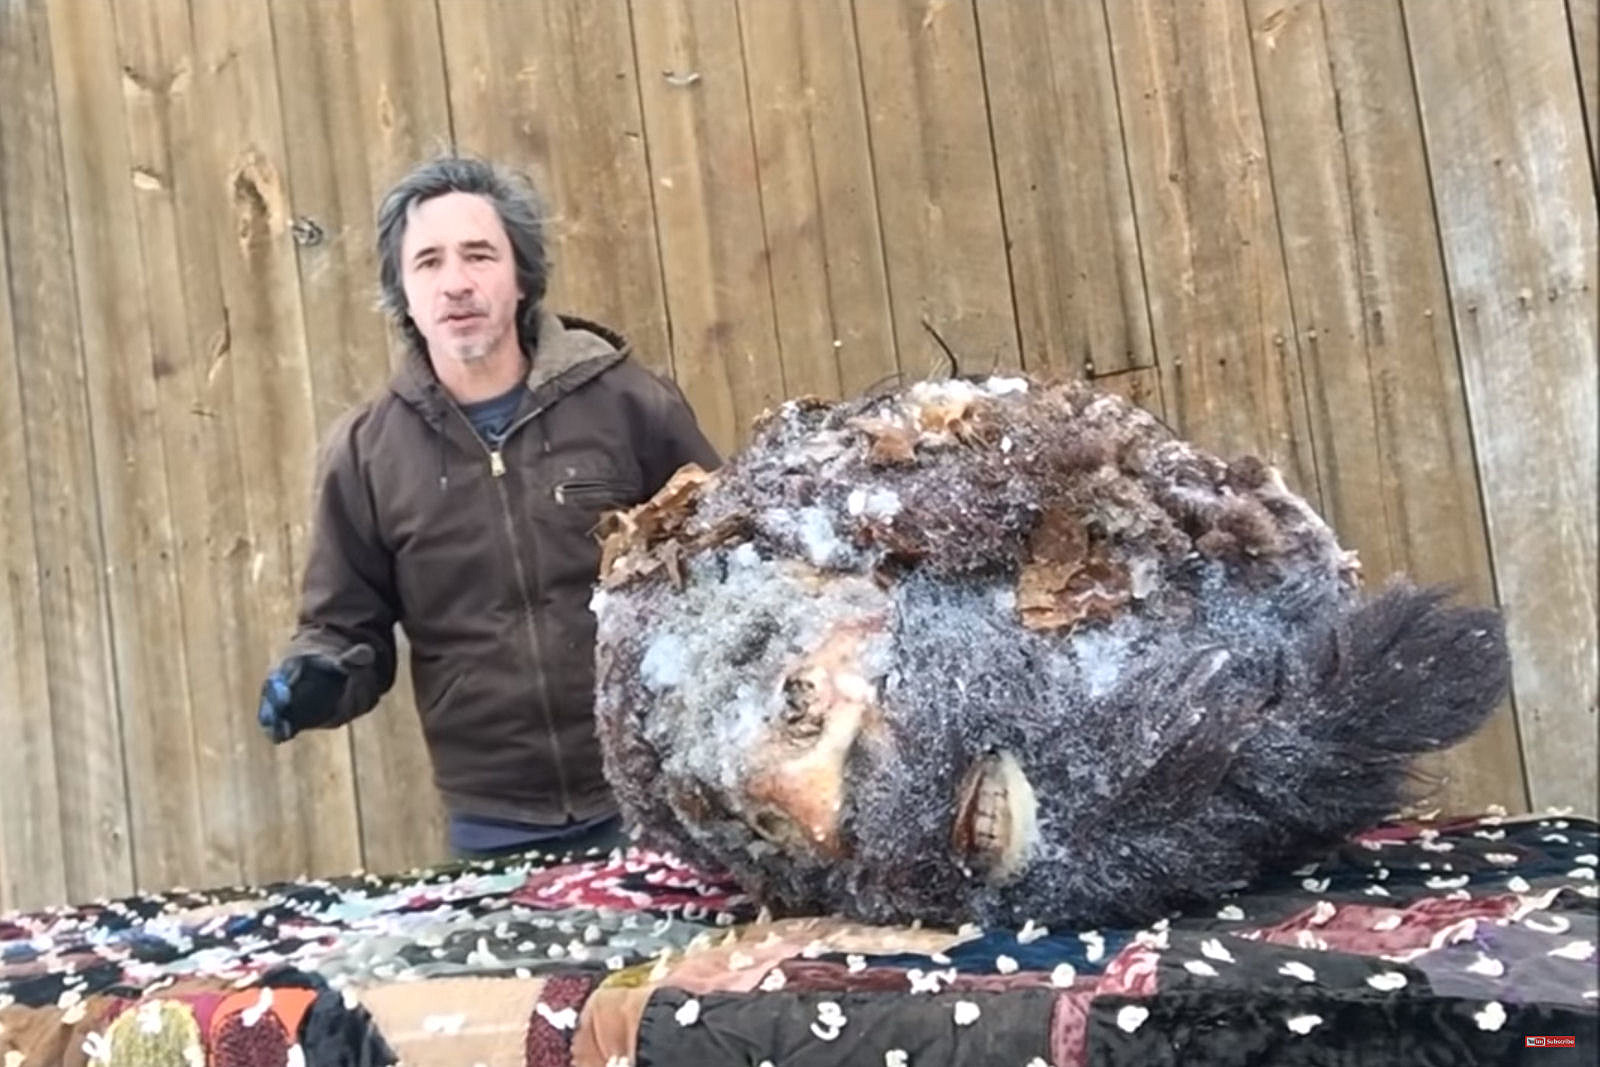 Look: Man Has Head Of Bigfoot In His Freezer